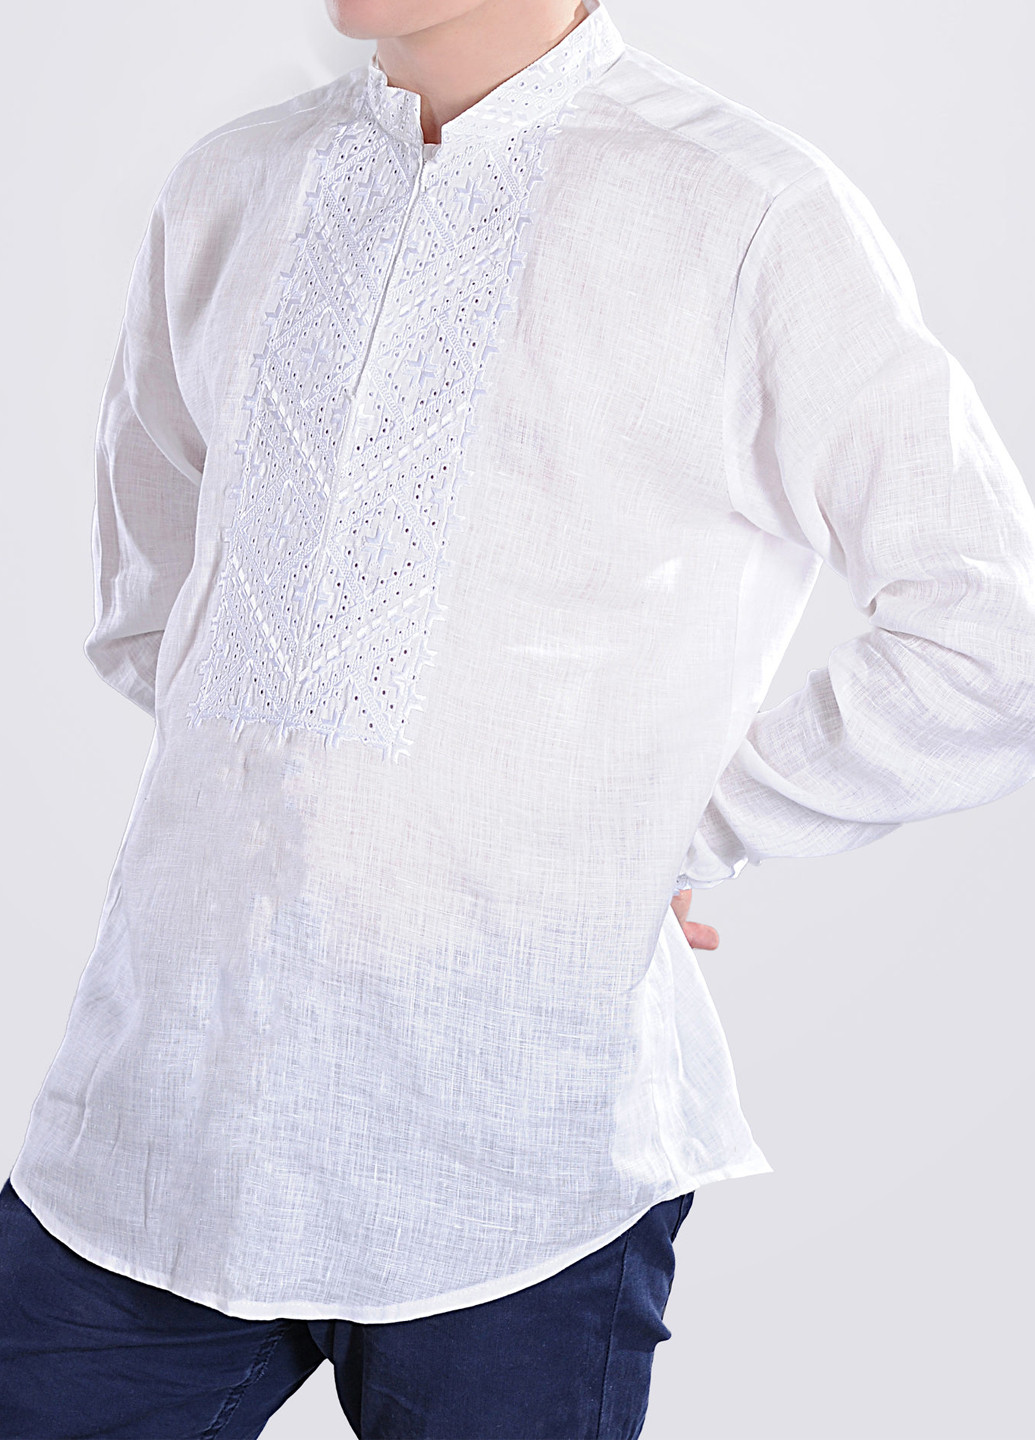 Вышиванка рубашка льняная Egostyle геометрическая белая лен